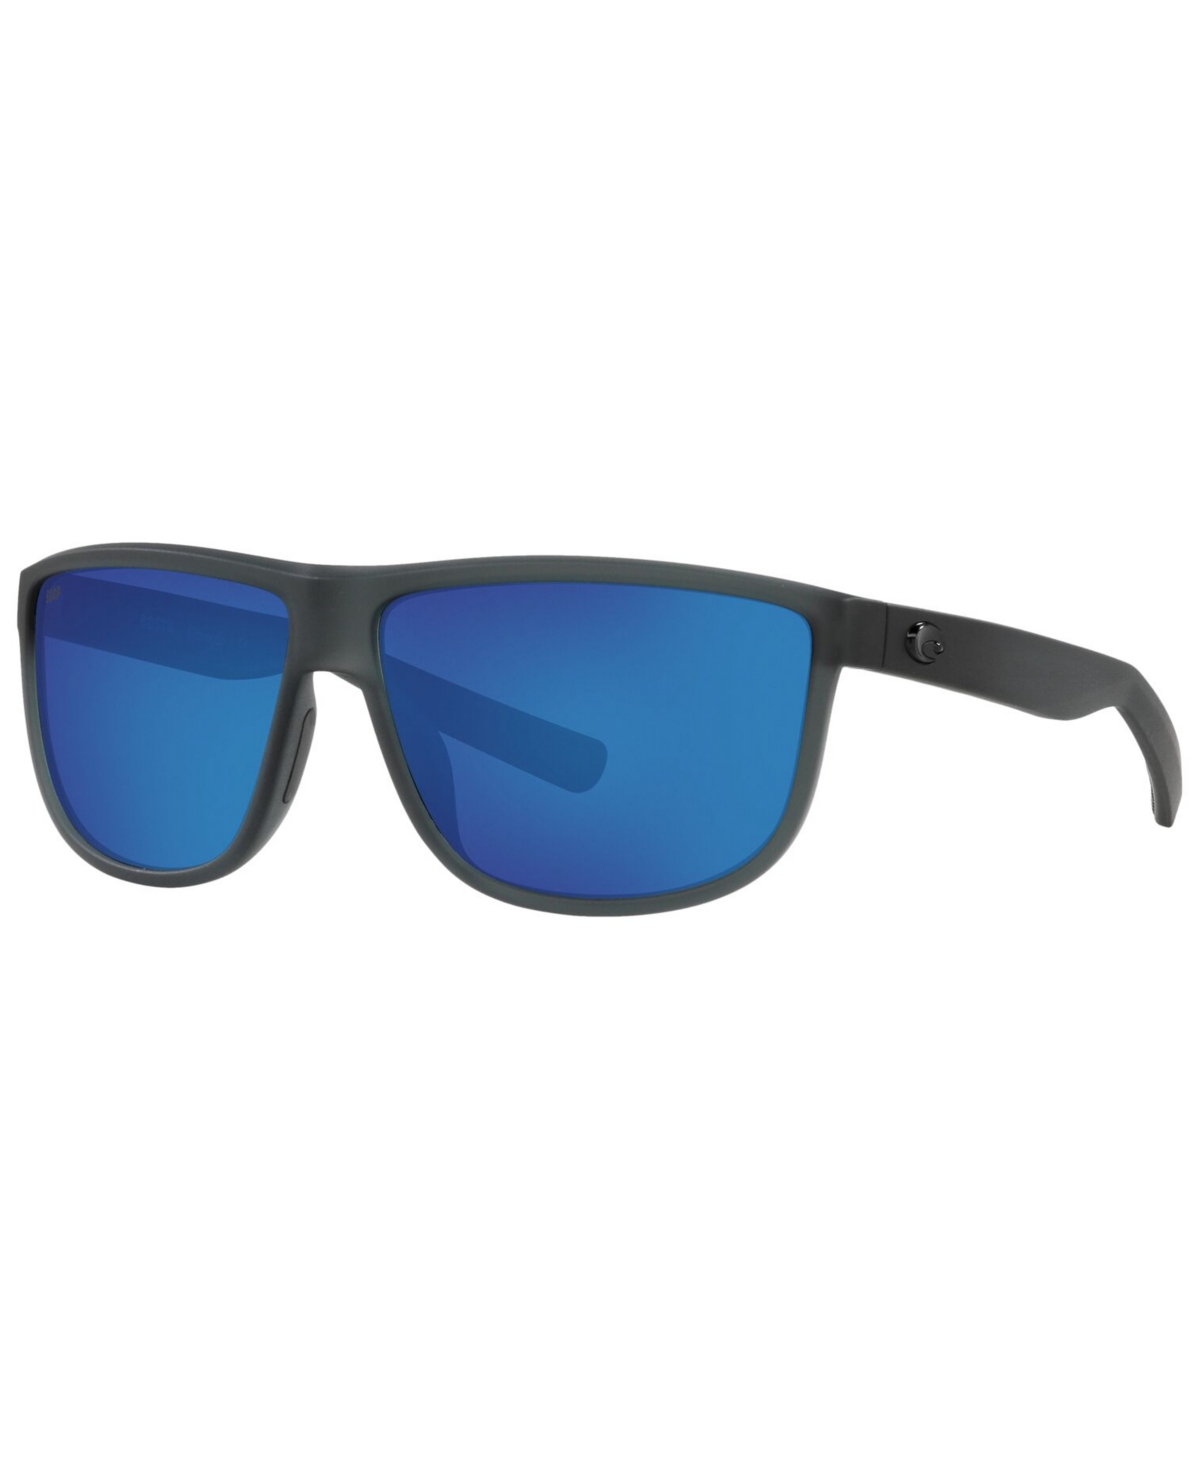 Costa Del Mar Rincondo Polarized Sunglasses, 6S9010 61